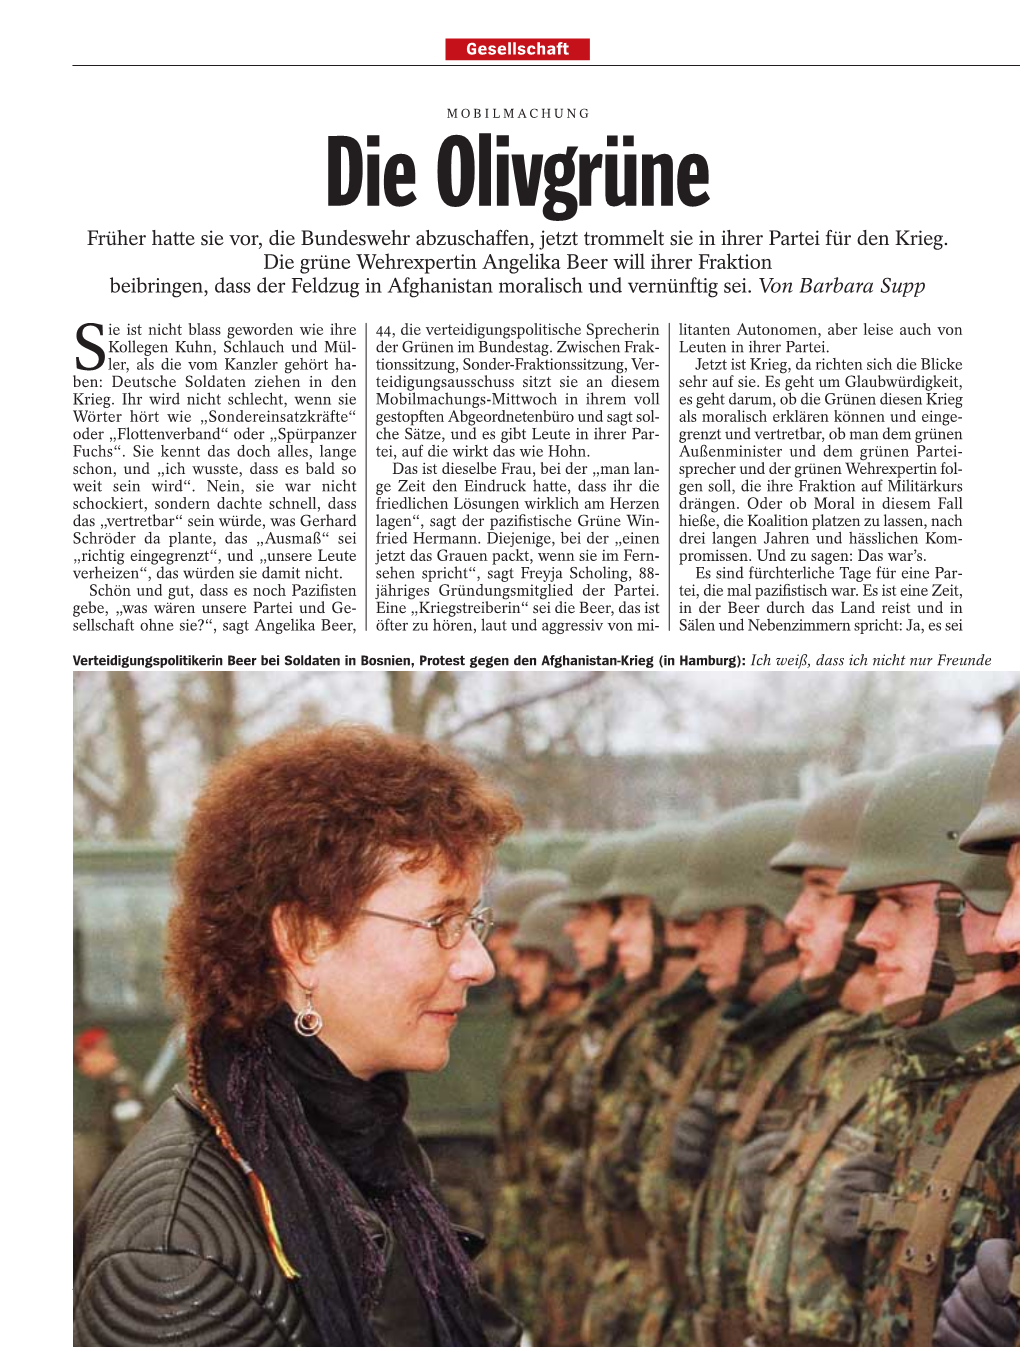 Die Olivgrüne Früher Hatte Sie Vor, Die Bundeswehr Abzuschaffen, Jetzt Trommelt Sie in Ihrer Partei Für Den Krieg